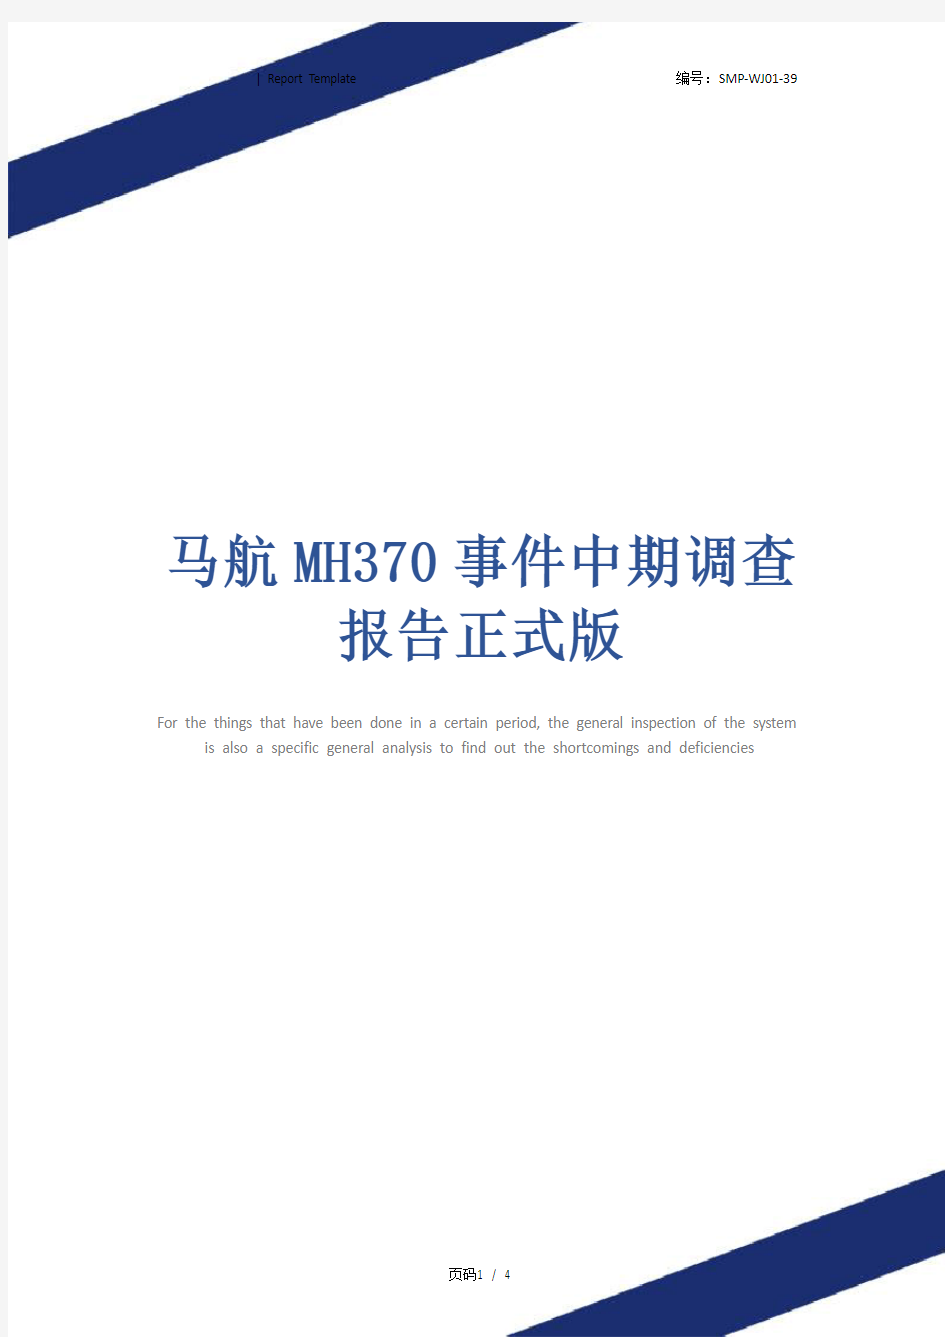 马航MH370事件中期调查报告正式版